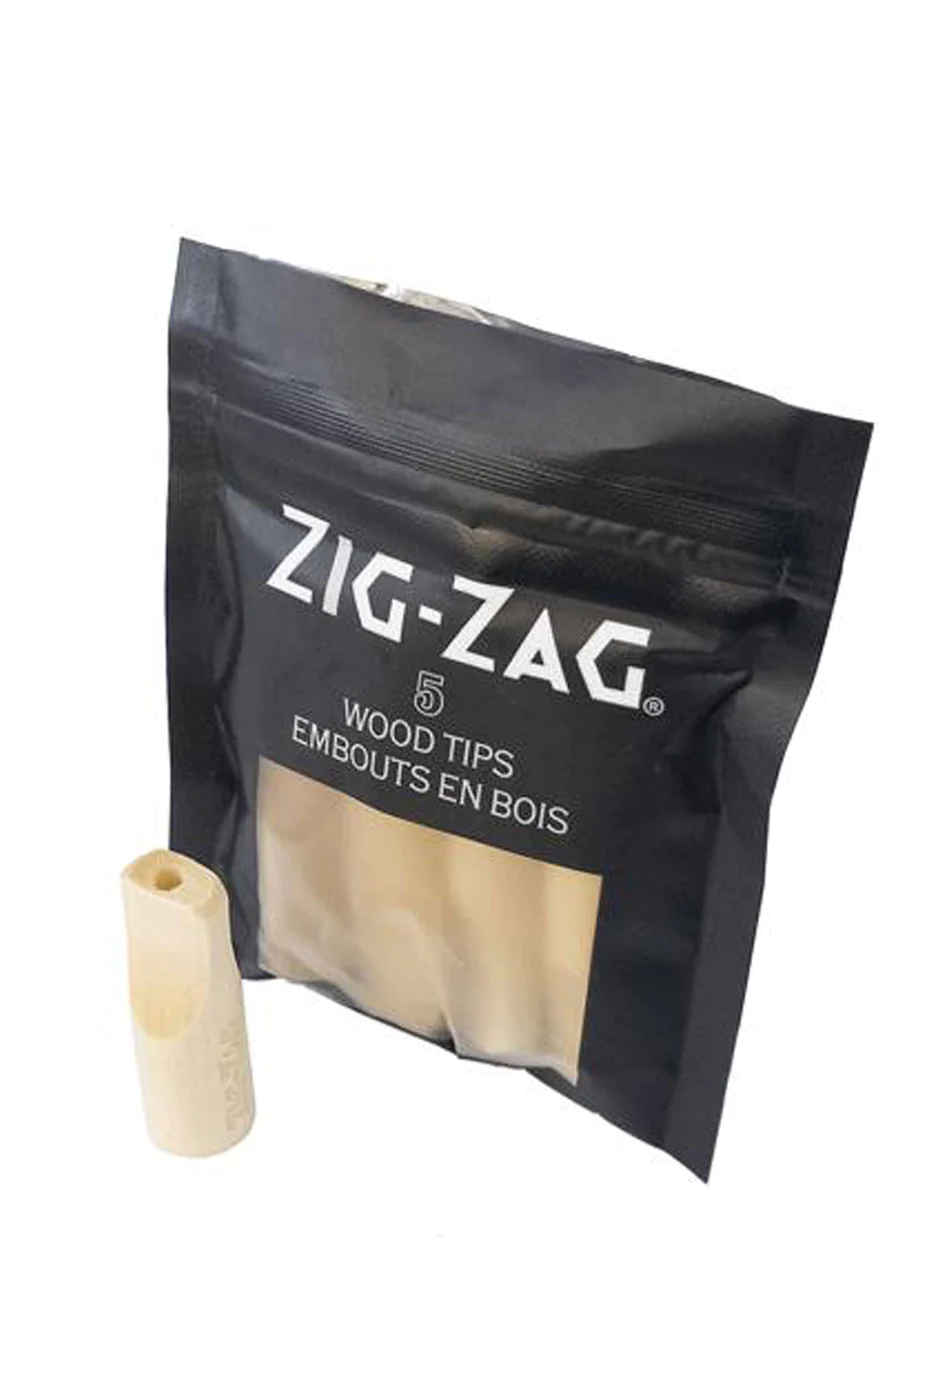 Zig-Zag Wood Tips